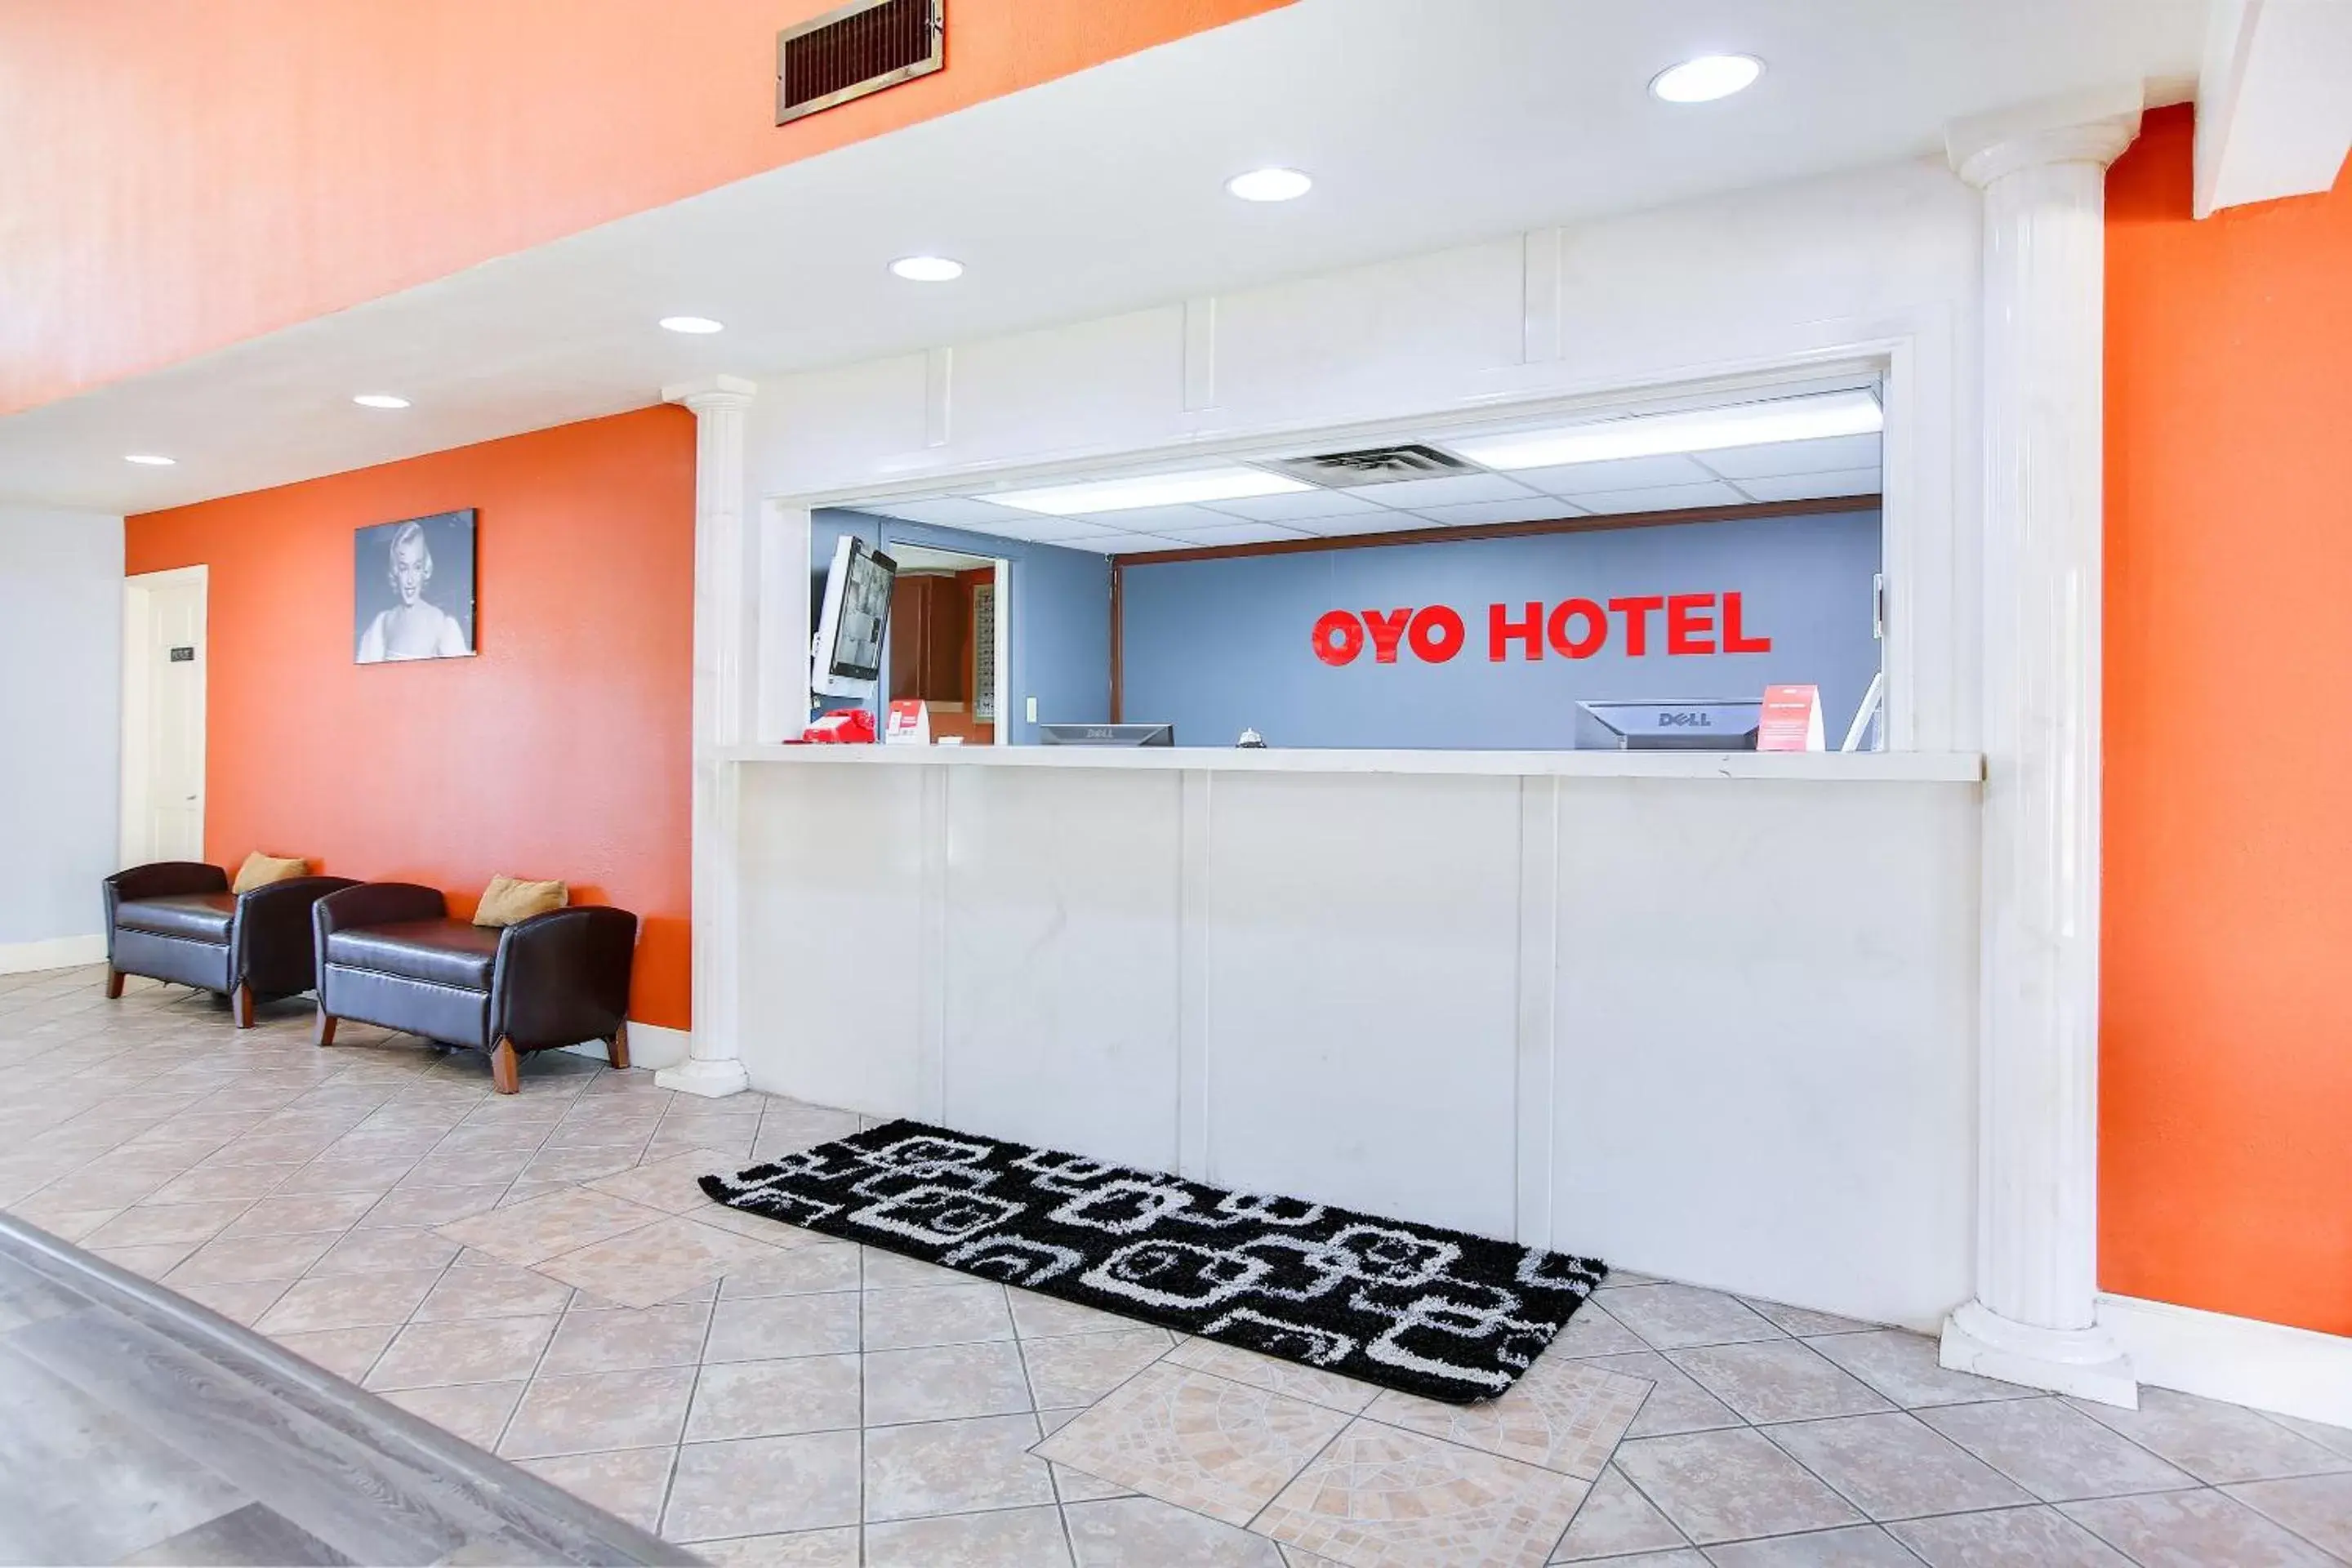 Lobby or reception, Lobby/Reception in OYO Hotel Texarkana Trinity AR Hwy I-30